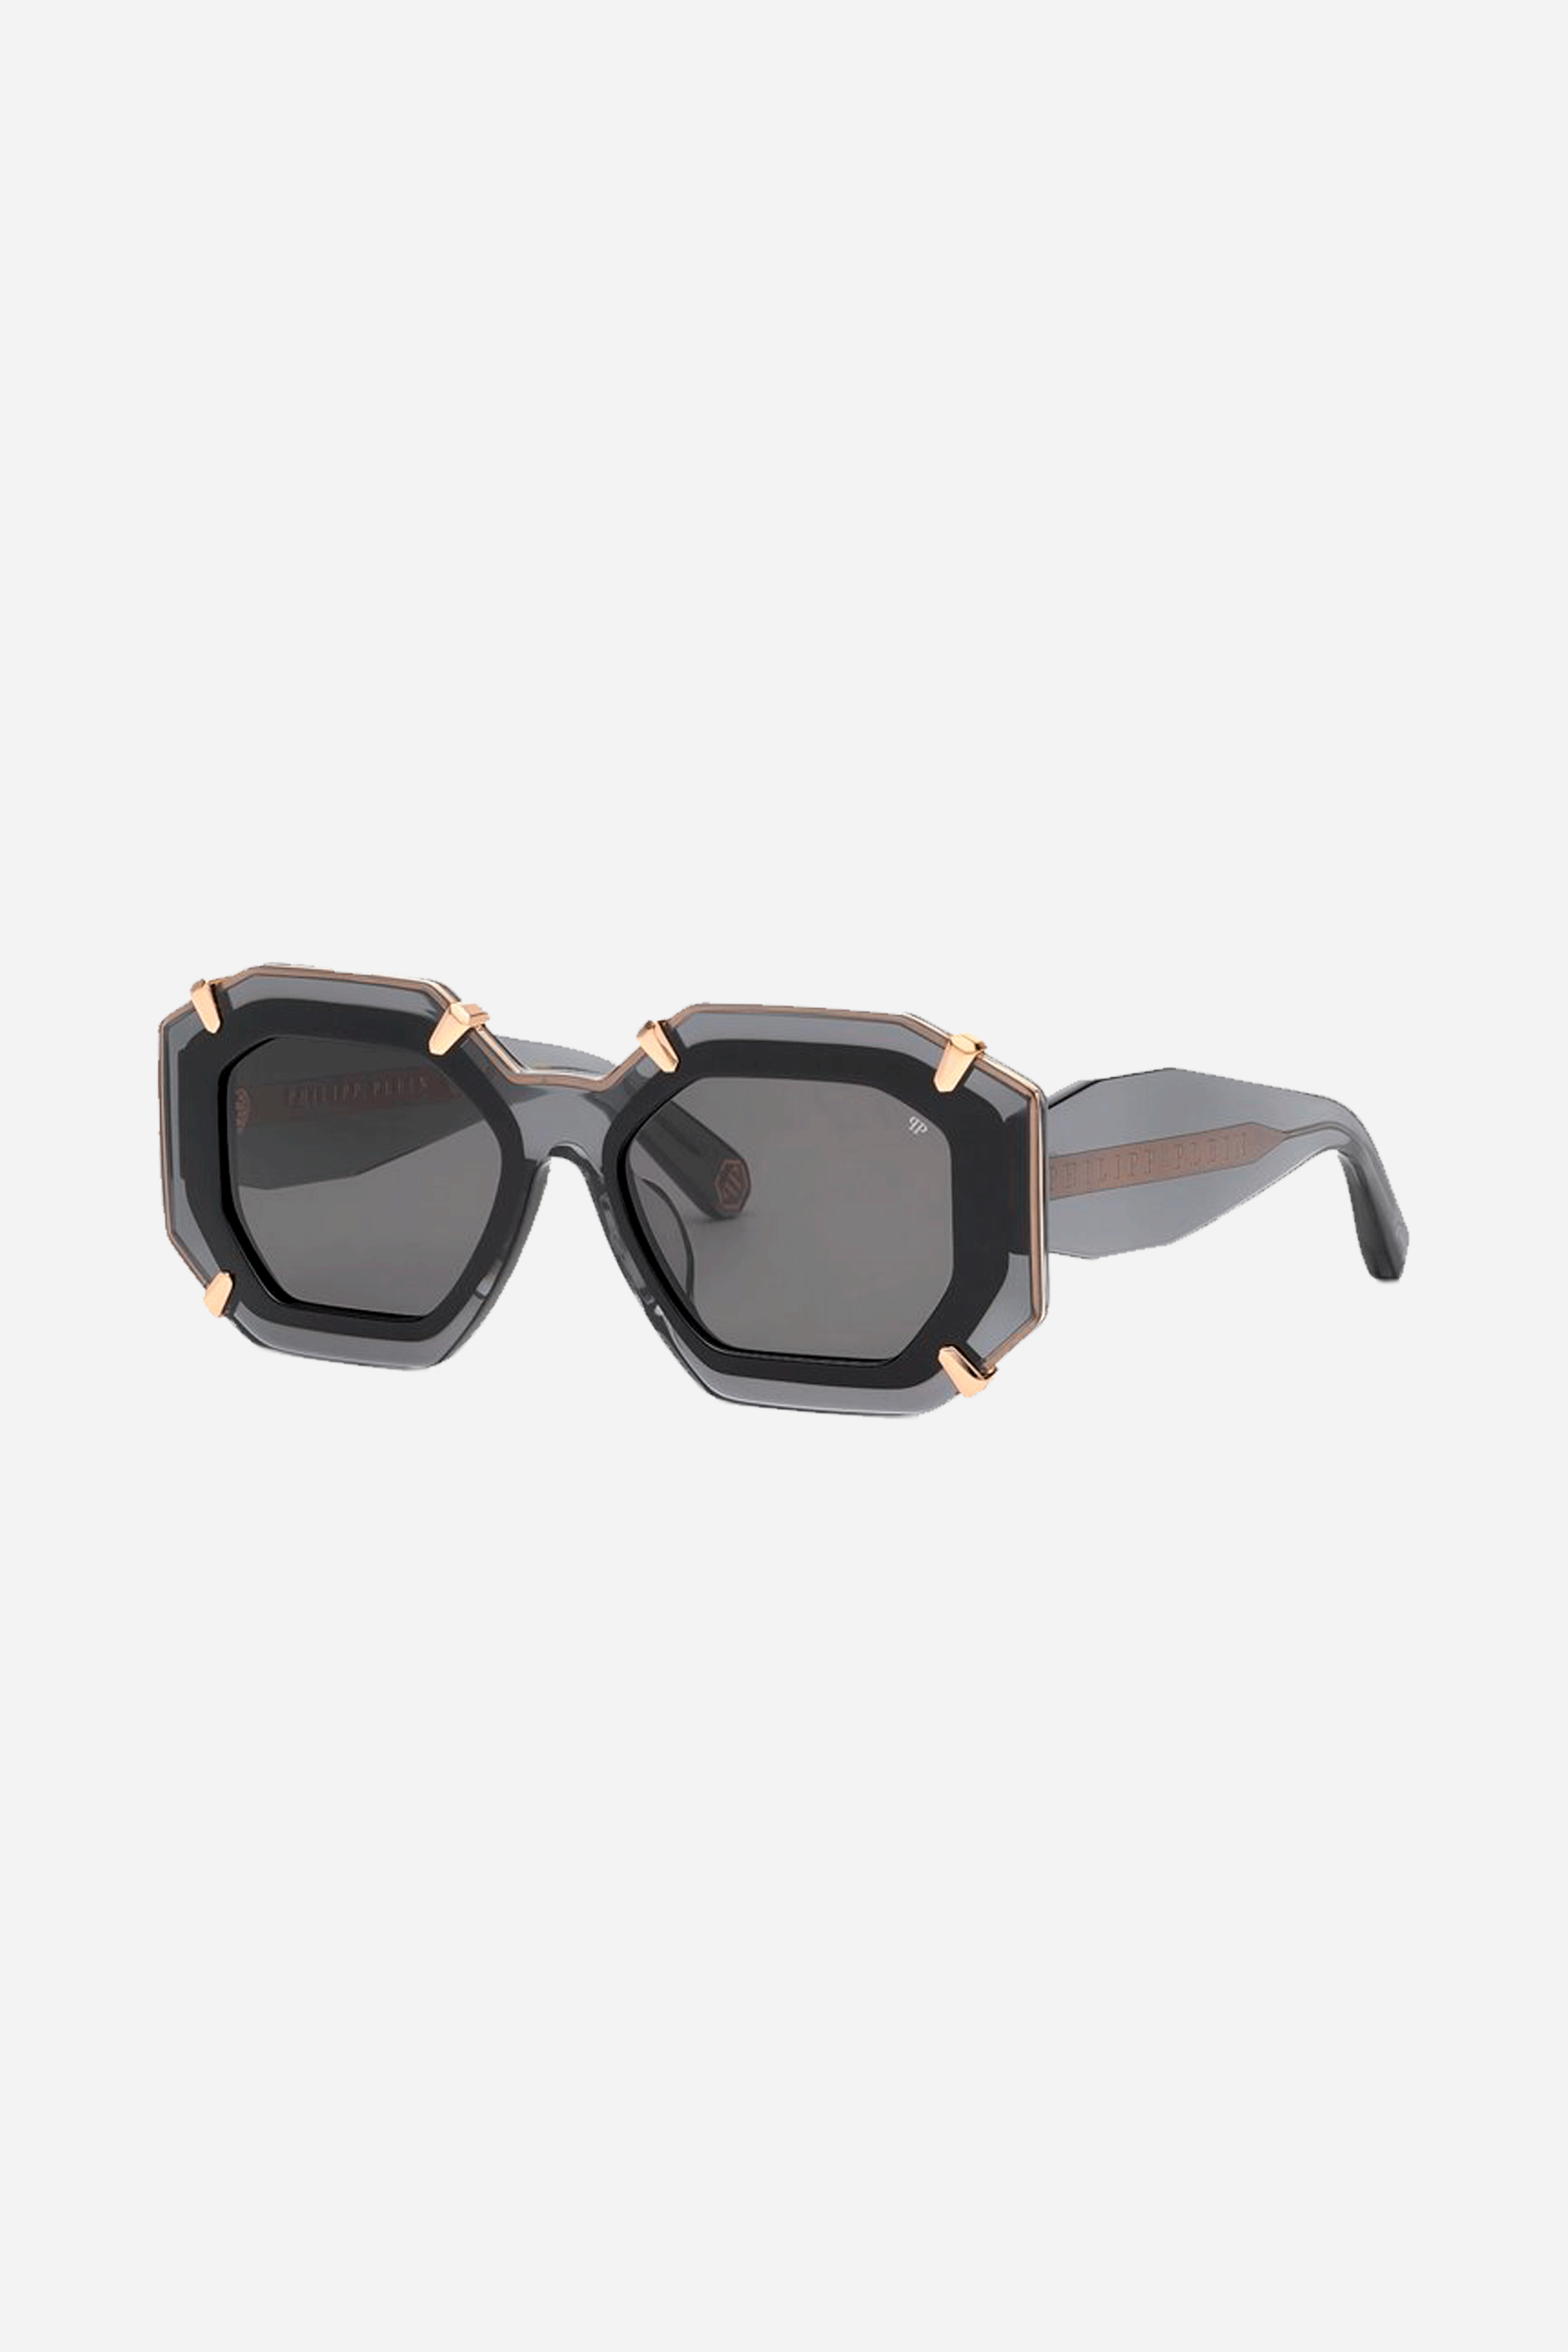 Philipp Plein oval grey sunglasses - Eyewear Club